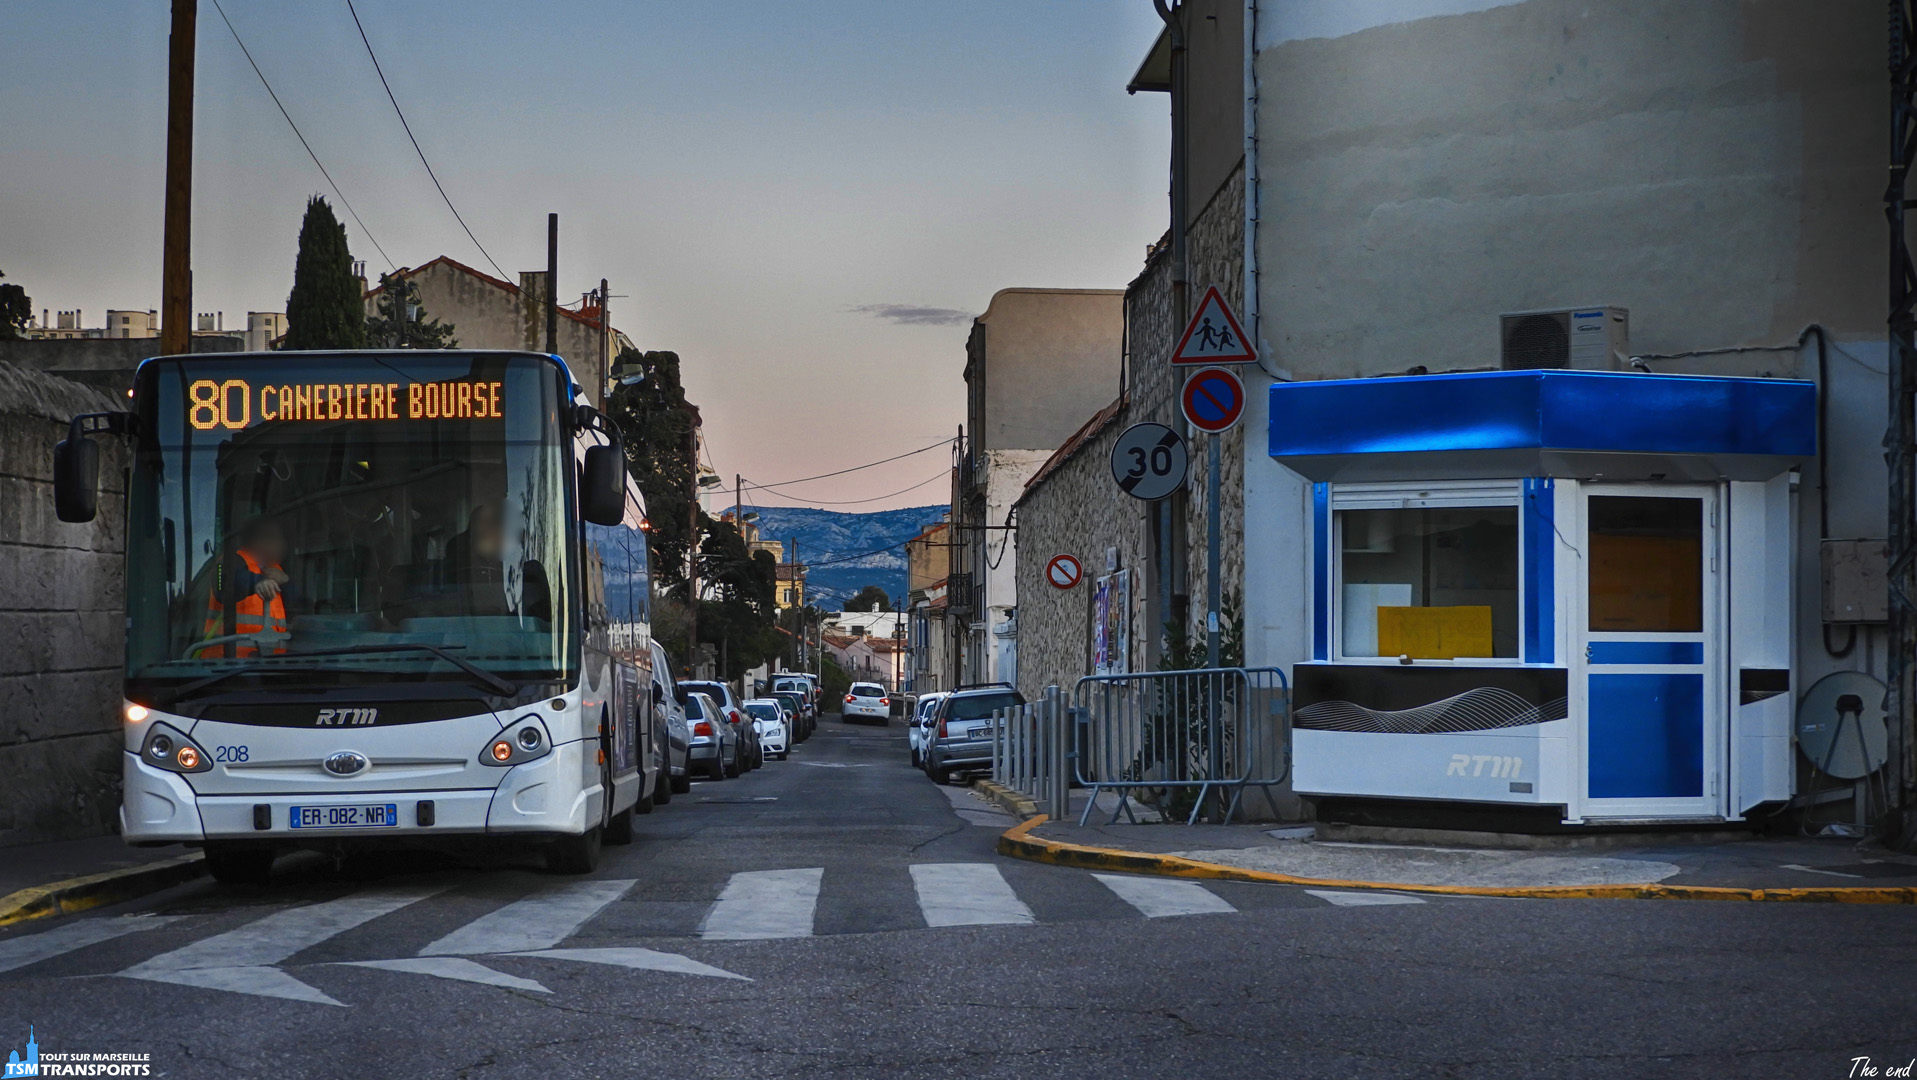 Fin de journée sur le quartier d'Endoume, les GX127, aujourd'hui disparus, continuent toujours leurs rotations au terminus, manœuvre obligatoire pour se garer et repartir dans le sens opposé.
.
C'est avec encore quelques rayons de soleil que ce GX127 est immortalisé sur sa zone de parking.
.
ℹ️ Heuliez Bus GX 127 RTM n°208.
.
📍 Intersection Rue Pierre Mouren / Rue d'Endoume, 7eme arrondissement de Marseille.
.
↔️ 80 : Eglise d'Endoume - Canebière Bourse (Ancien itinéraire).
.
🕒 Véhicule déjà spot, retrouvez le avec le #rtm208
.
📸 Nikon B700.
.
📅 26 Mars 2018.